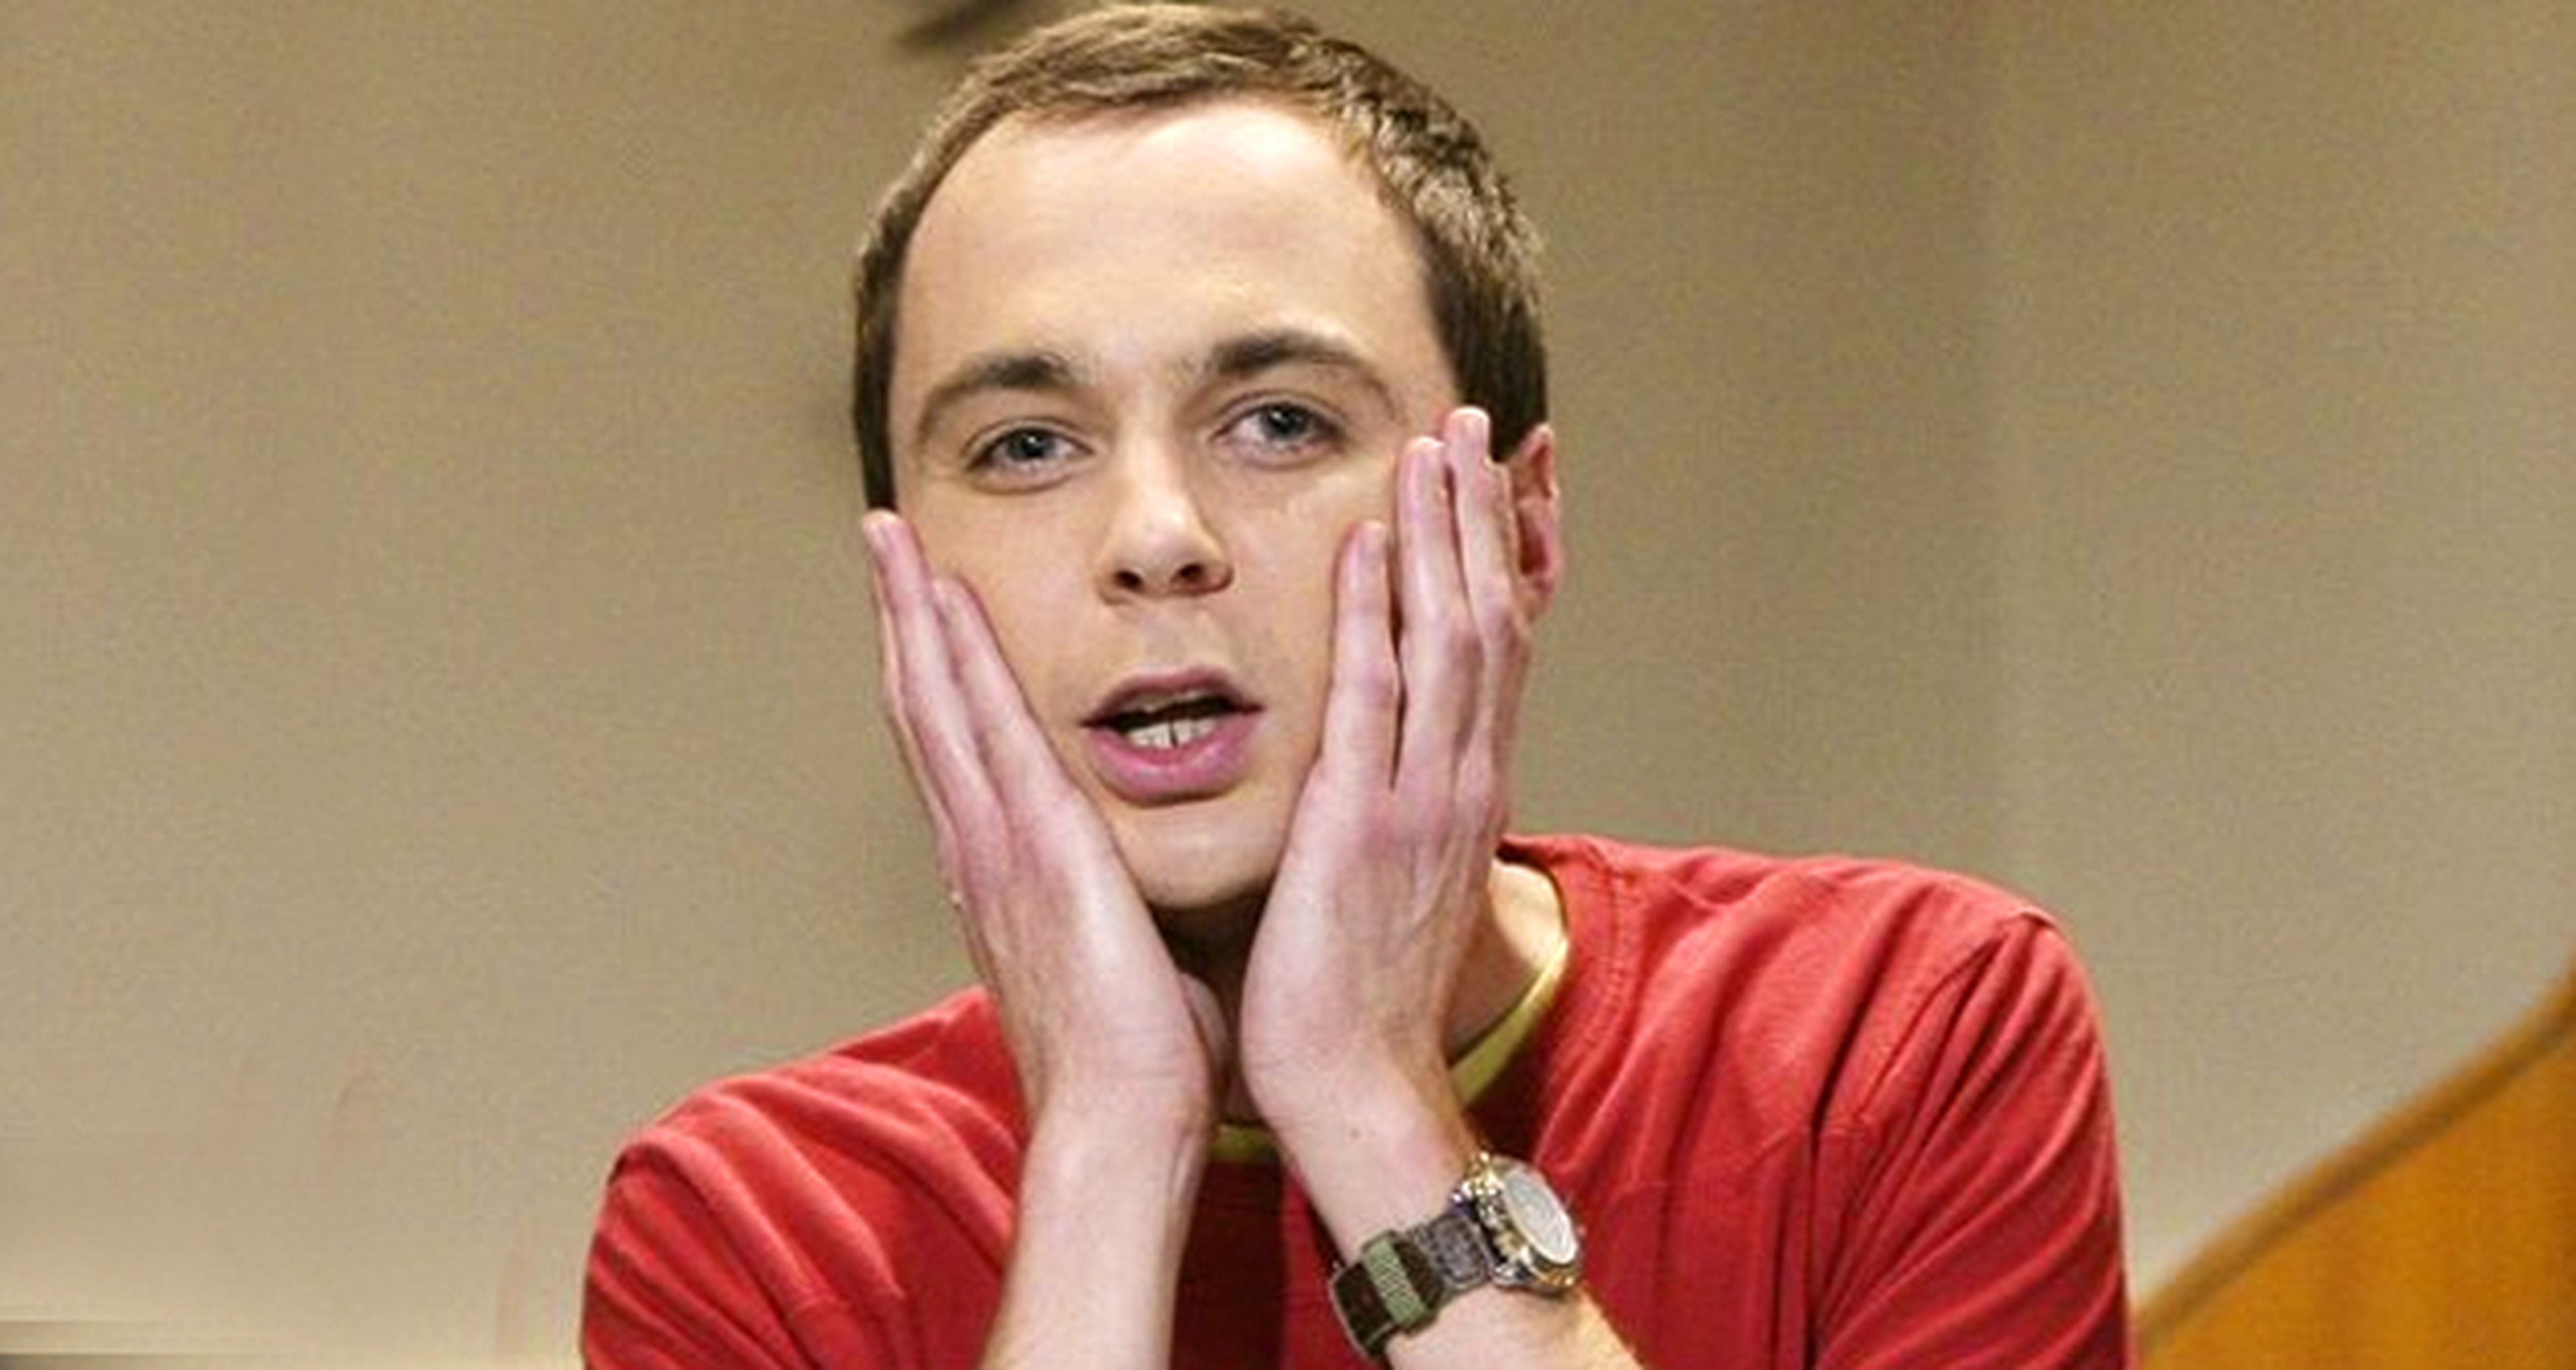 The Big Bang Theory 9 nos mostrará a Sheldon como menos lo esperamos